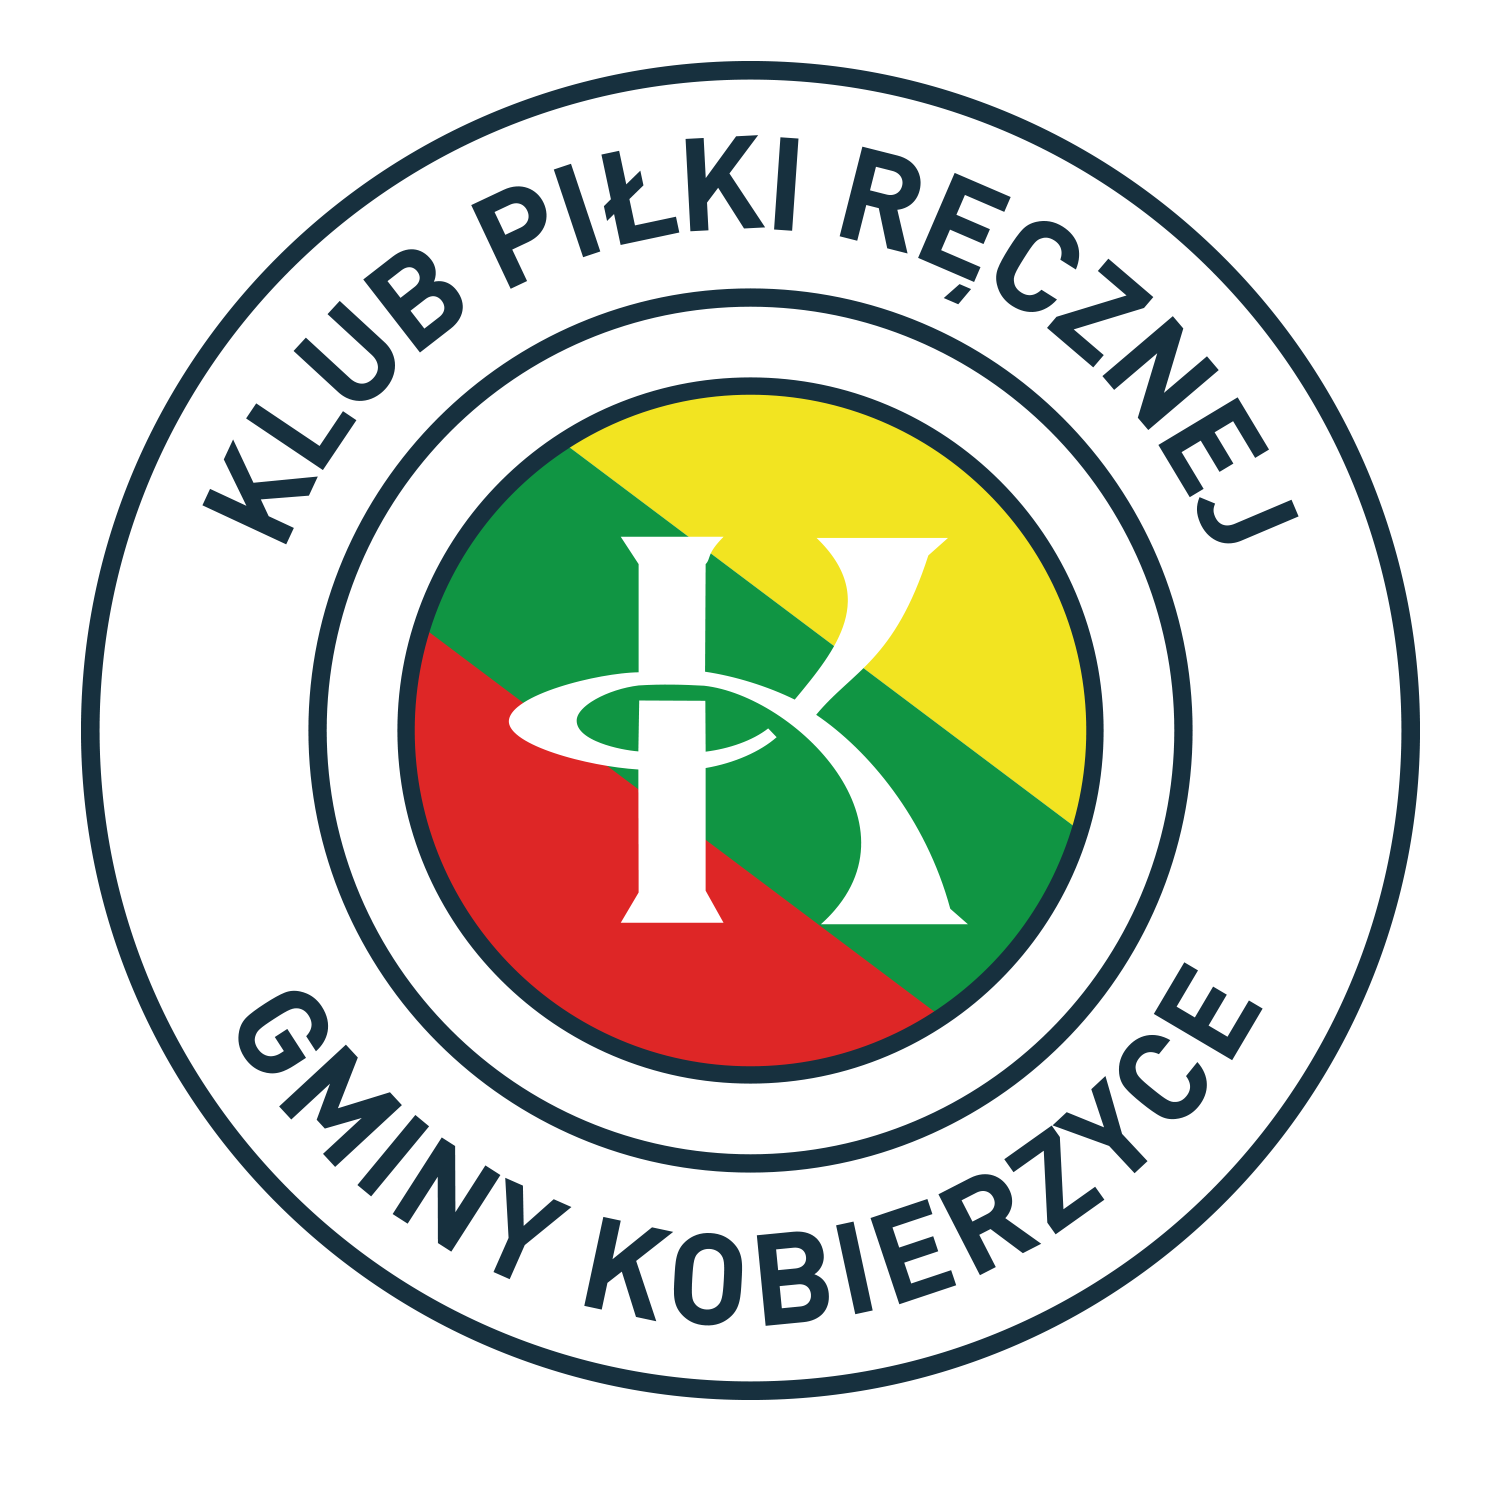 KPR Gminy Kobierzyce - logo